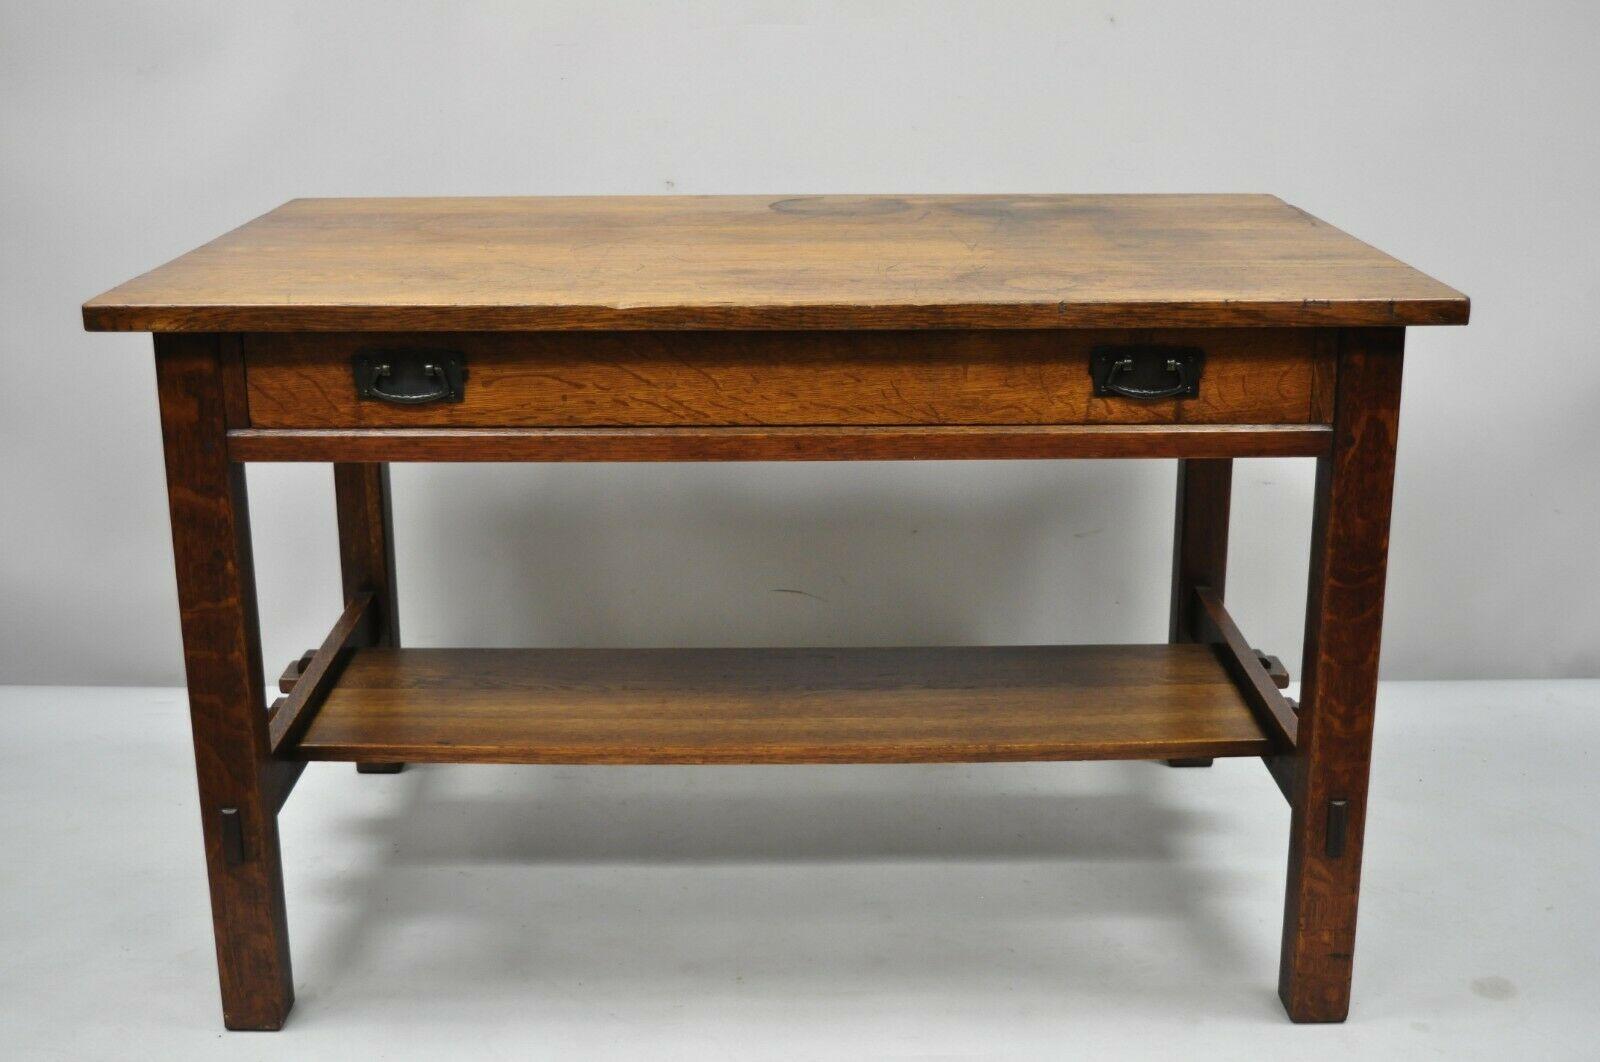 L & J.G. Stickley Library Table Desk #531 One Drawer Mission Oak Arts & Crafts 3